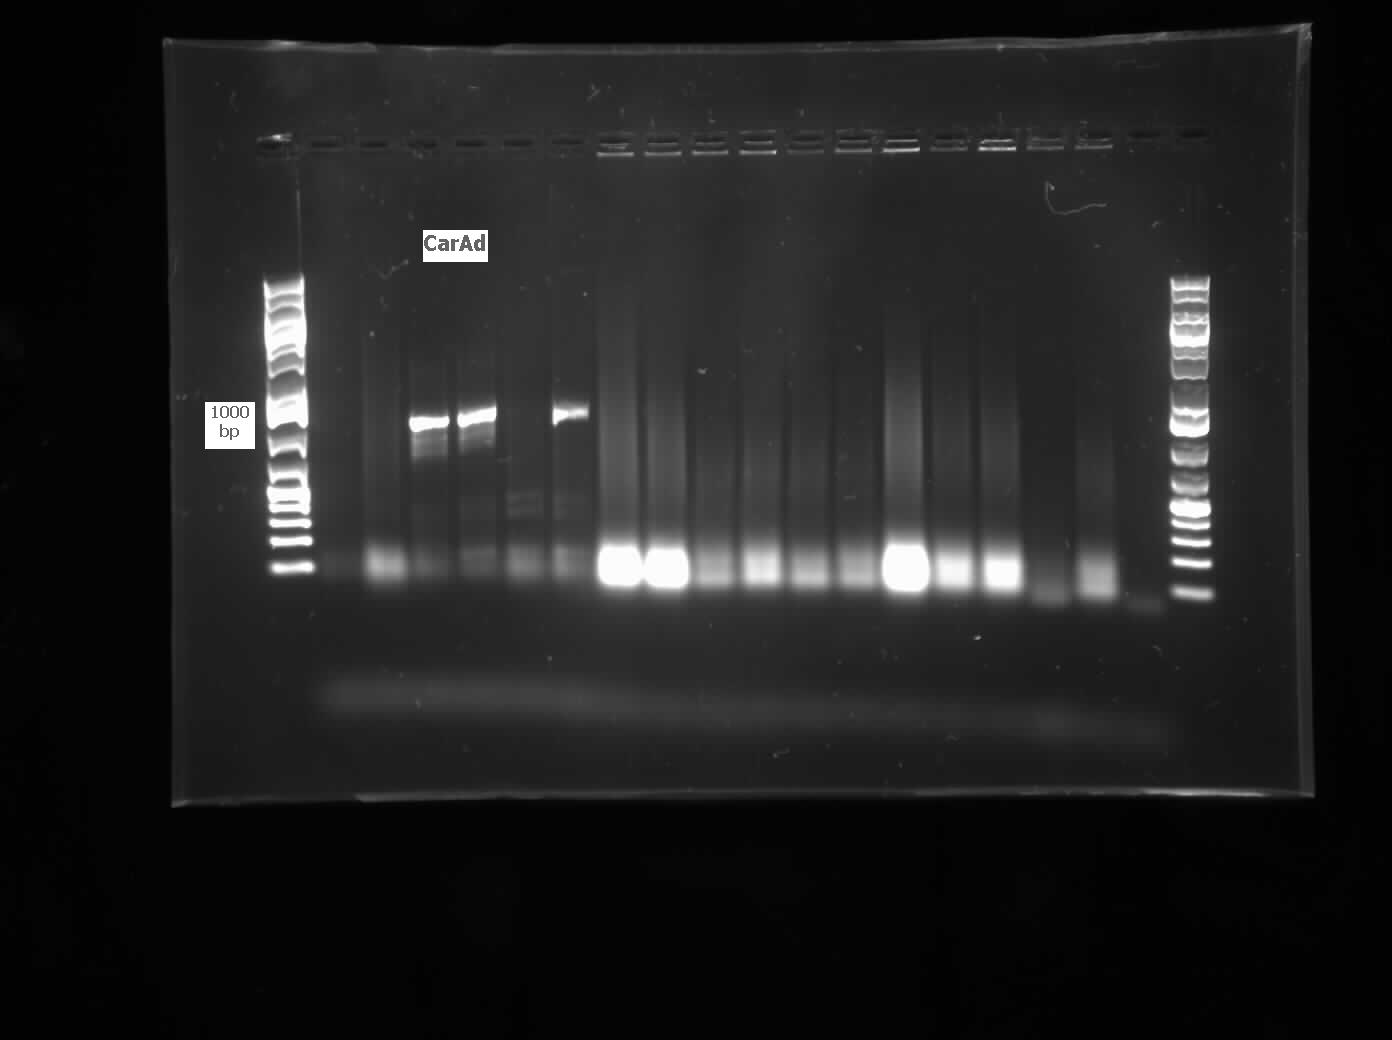 07.20.2012 CarAd colony PCR from LD2.jpg